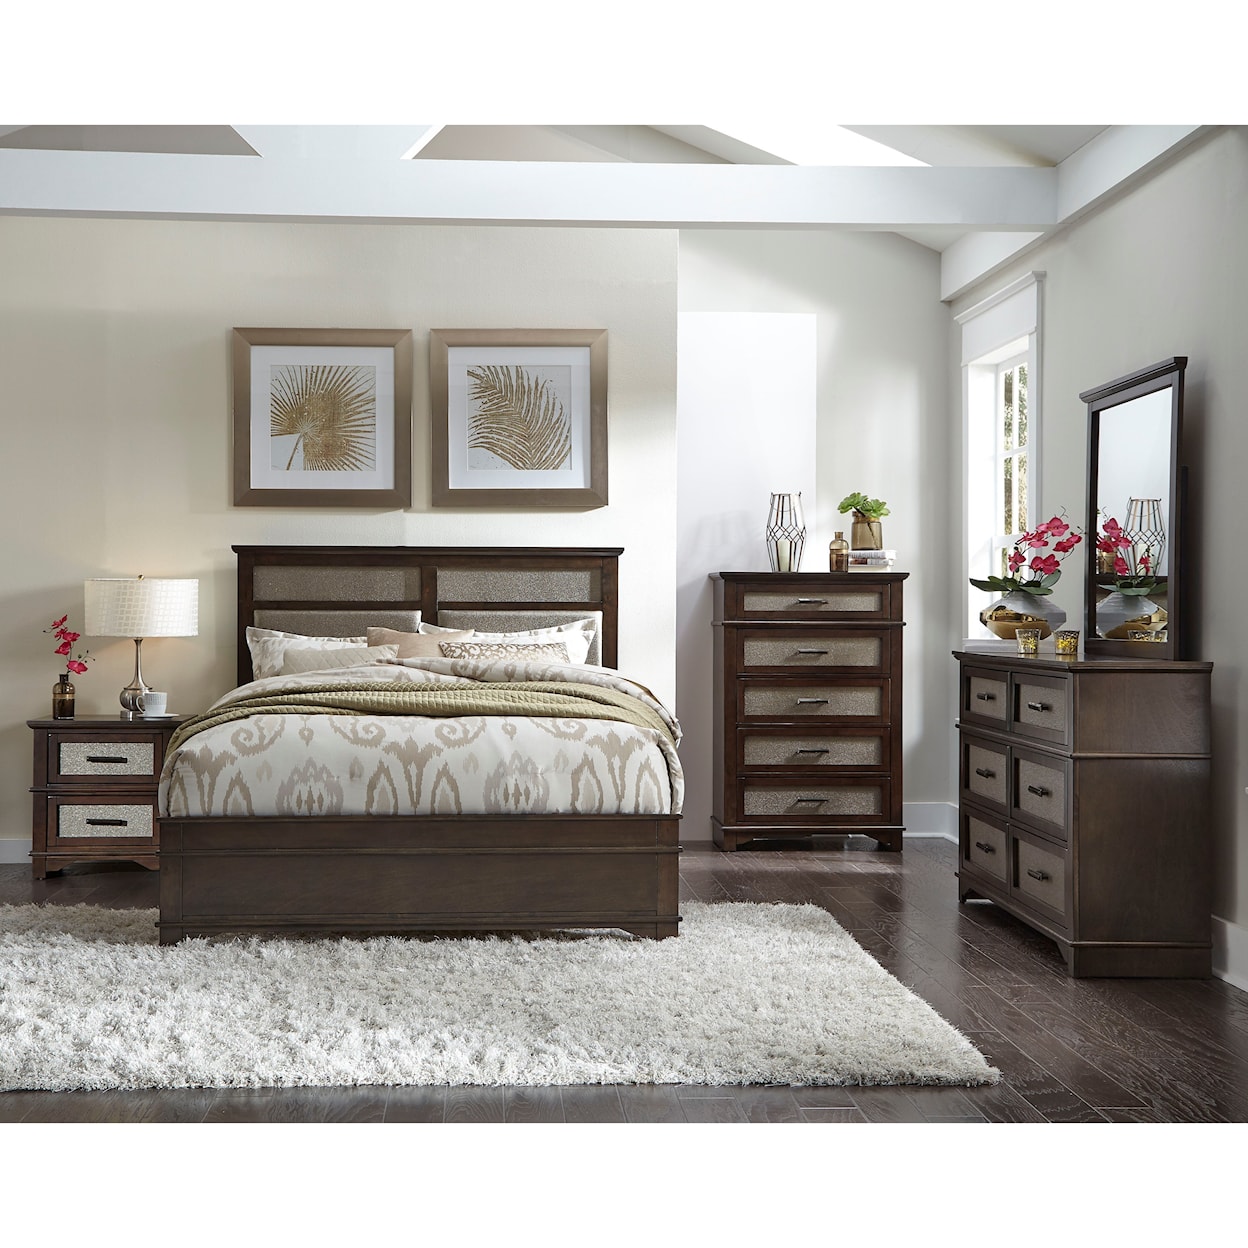 Progressive Furniture Dazzle Queen Bedroom Group